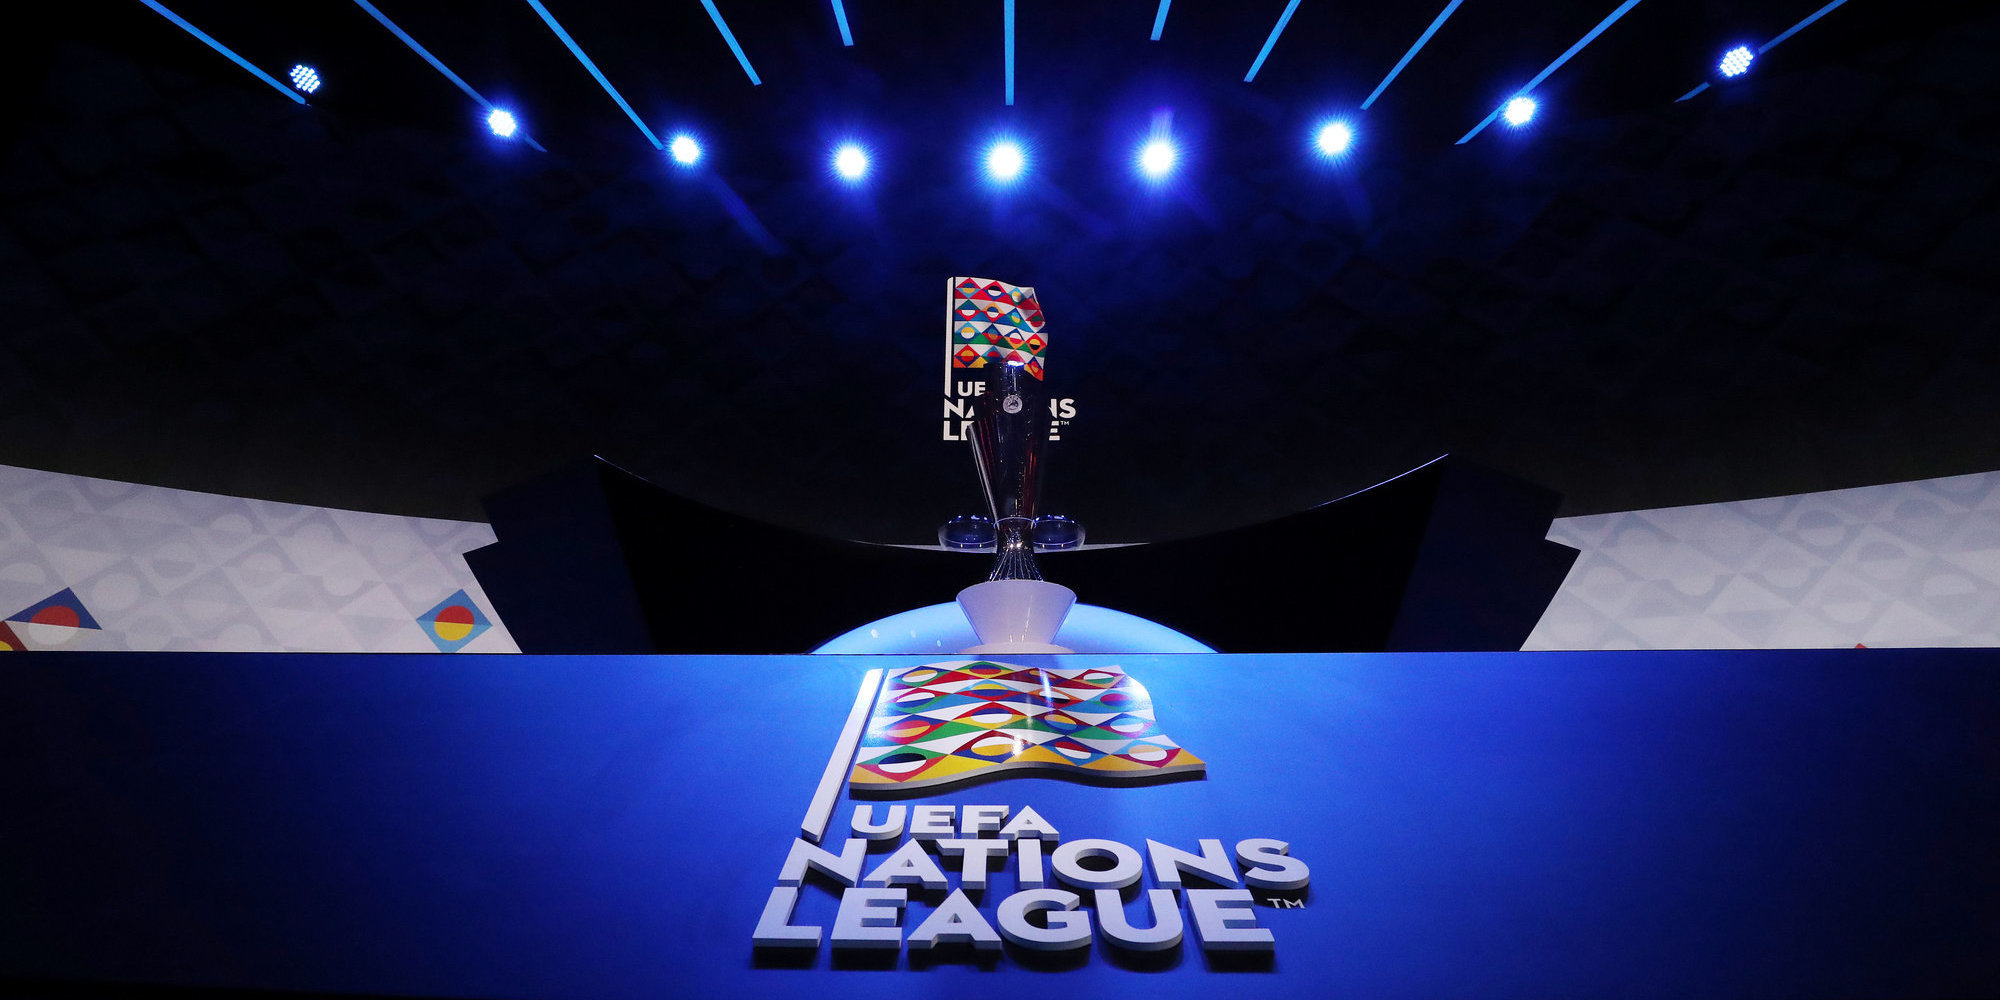 УЕФА назвал страны, которые заинтересованы в проведении финальной стадии Лиги наций в 2023 году